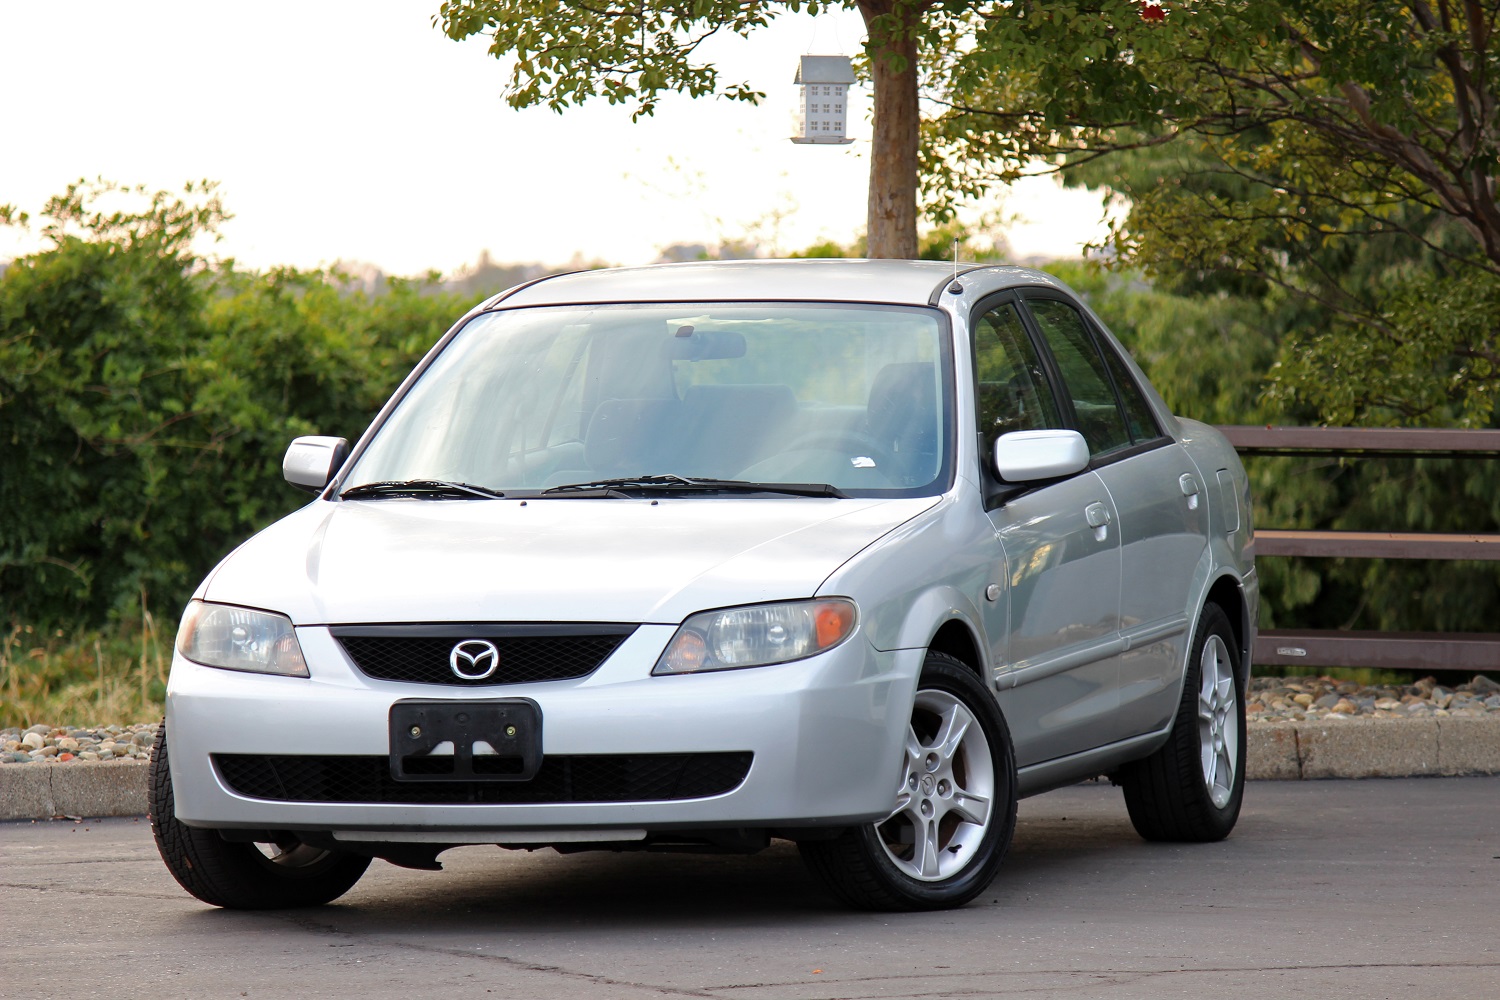 Prestige Motors - 2003 Mazda Protege LX for Sale in Sacramento